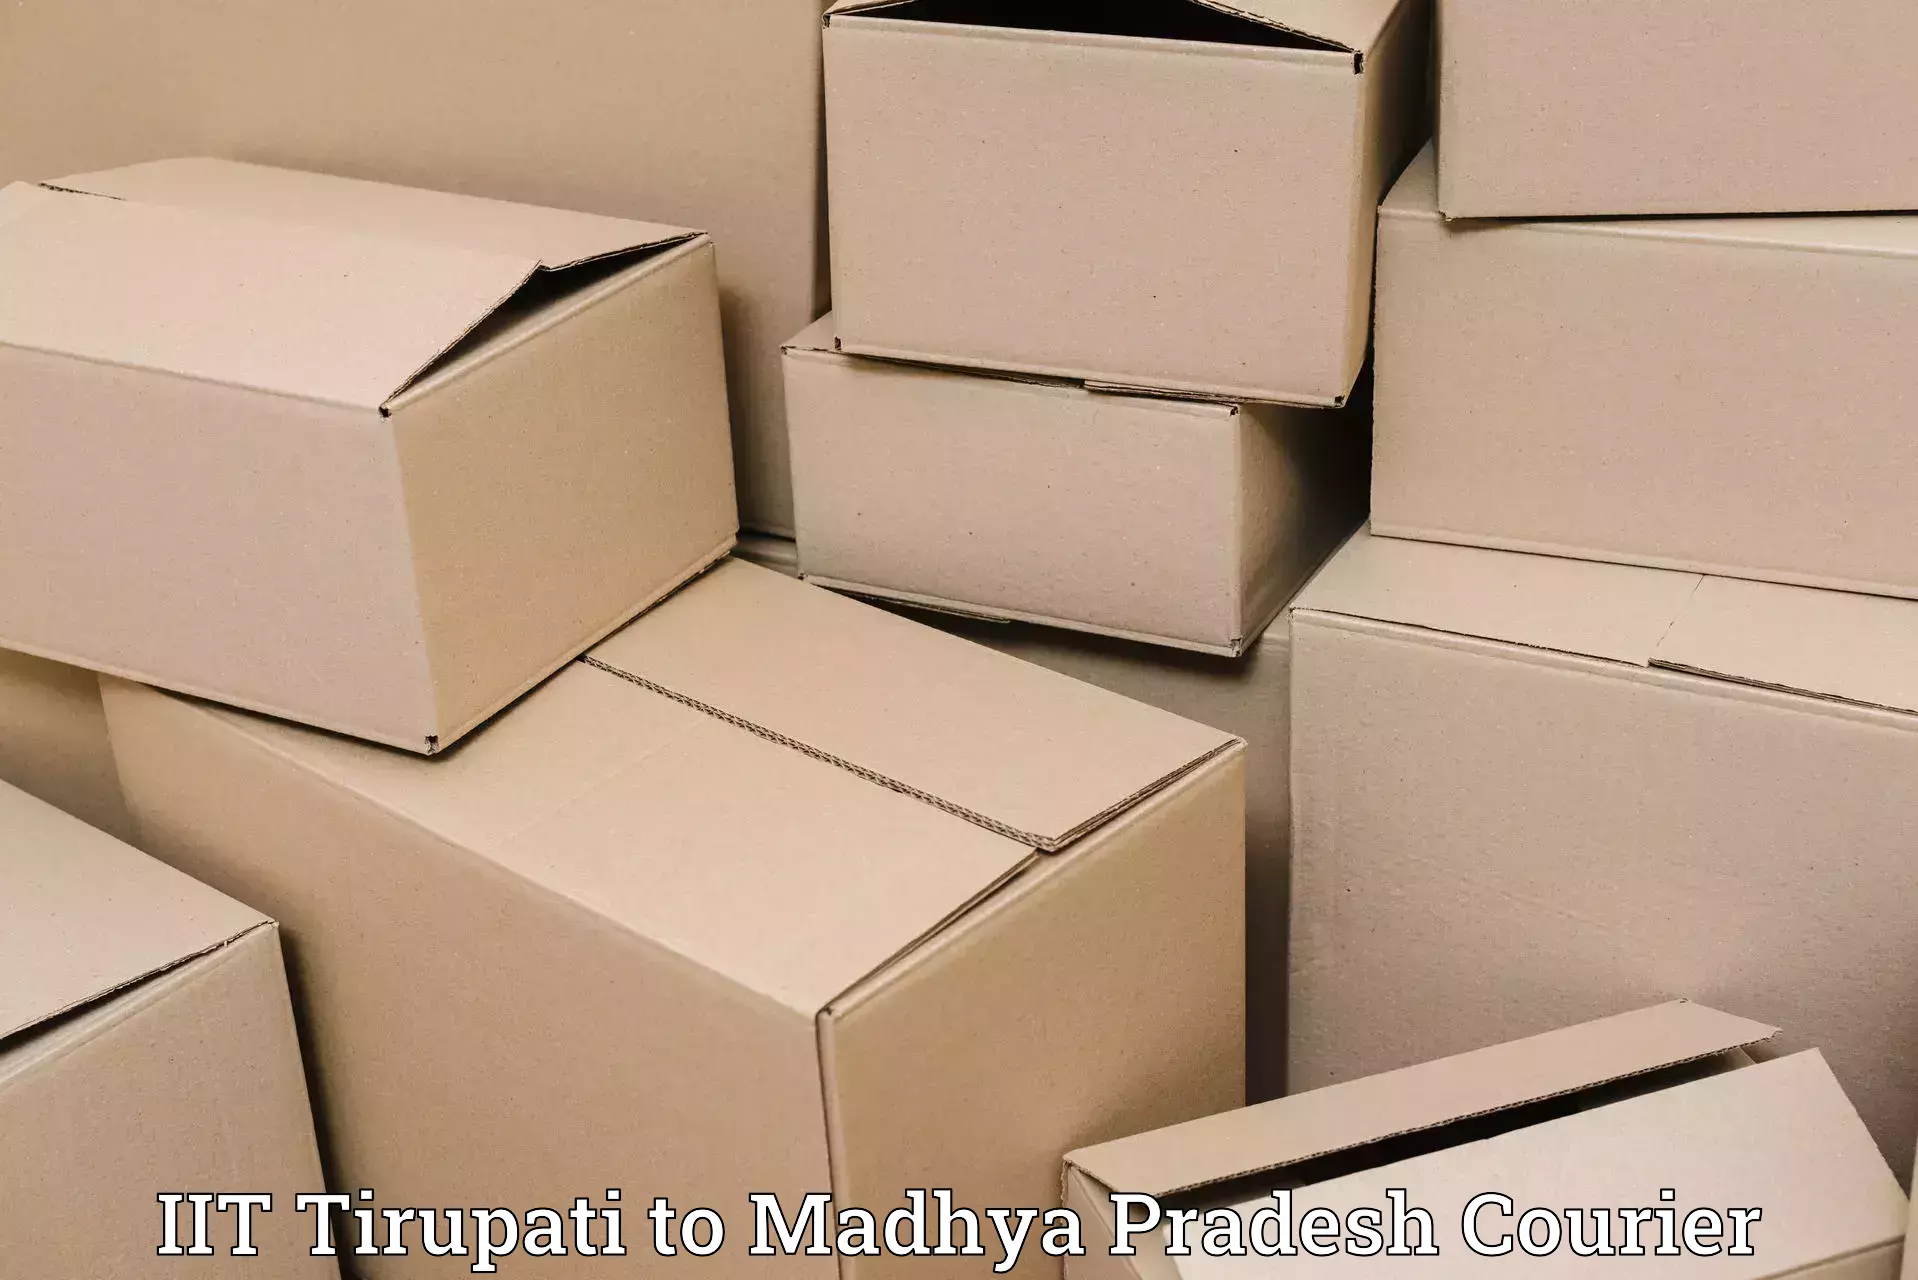 Cost-effective courier options IIT Tirupati to Datia